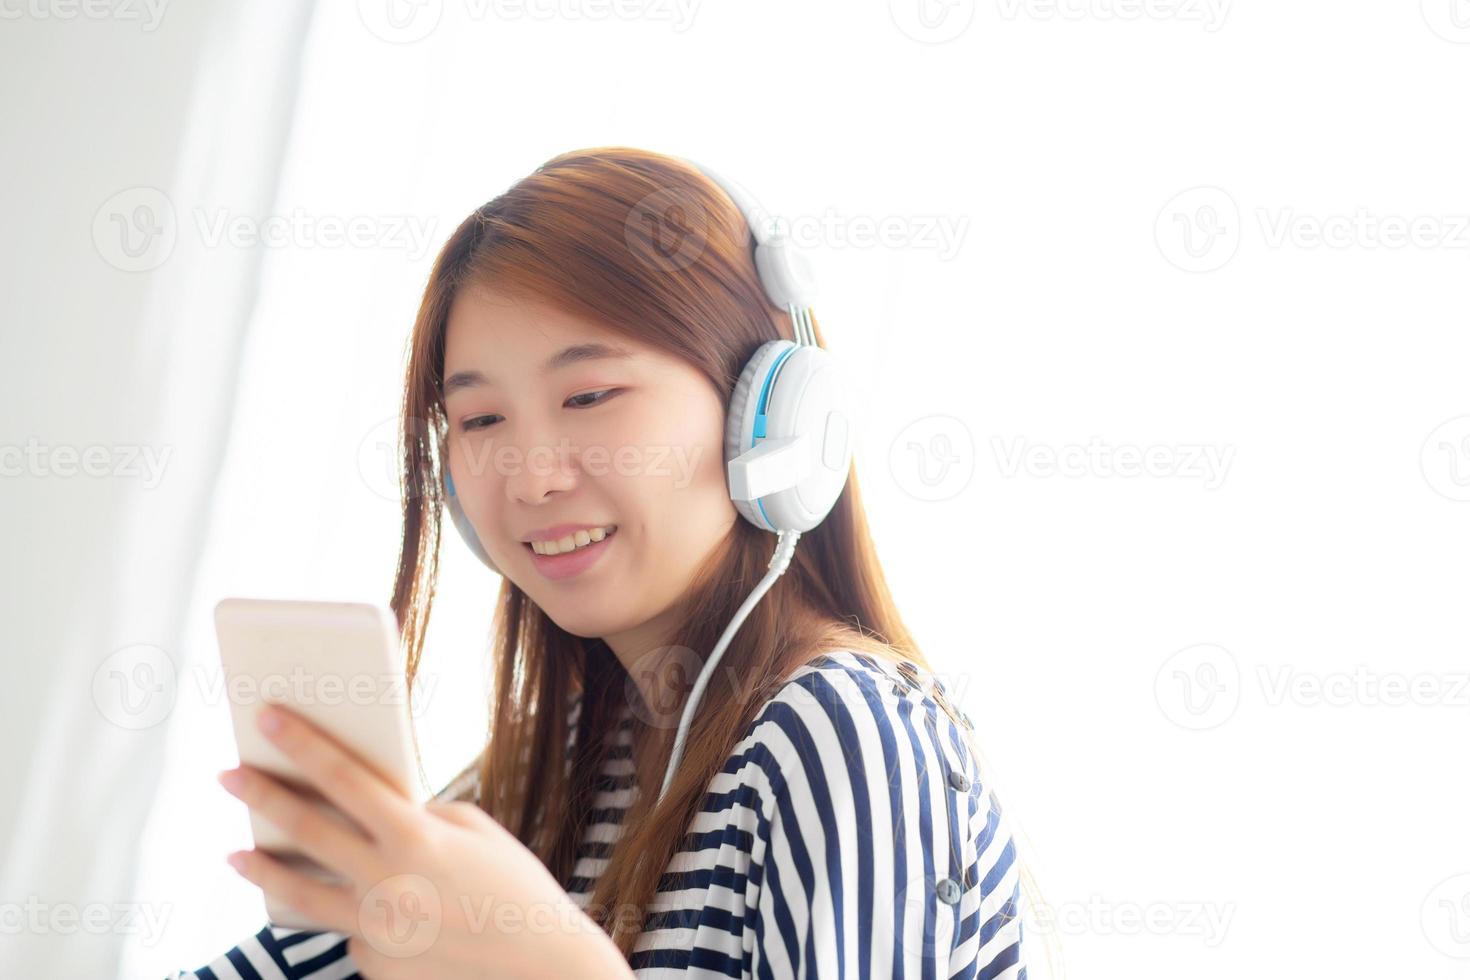 mooie aziatische jonge vrouw geniet van luister muziek met hoofdtelefoon en houdt slimme mobiele telefoon vast terwijl ze in de slaapkamer zit, ontspan meisje met oortelefoon, vrije tijd en technologie concept. foto